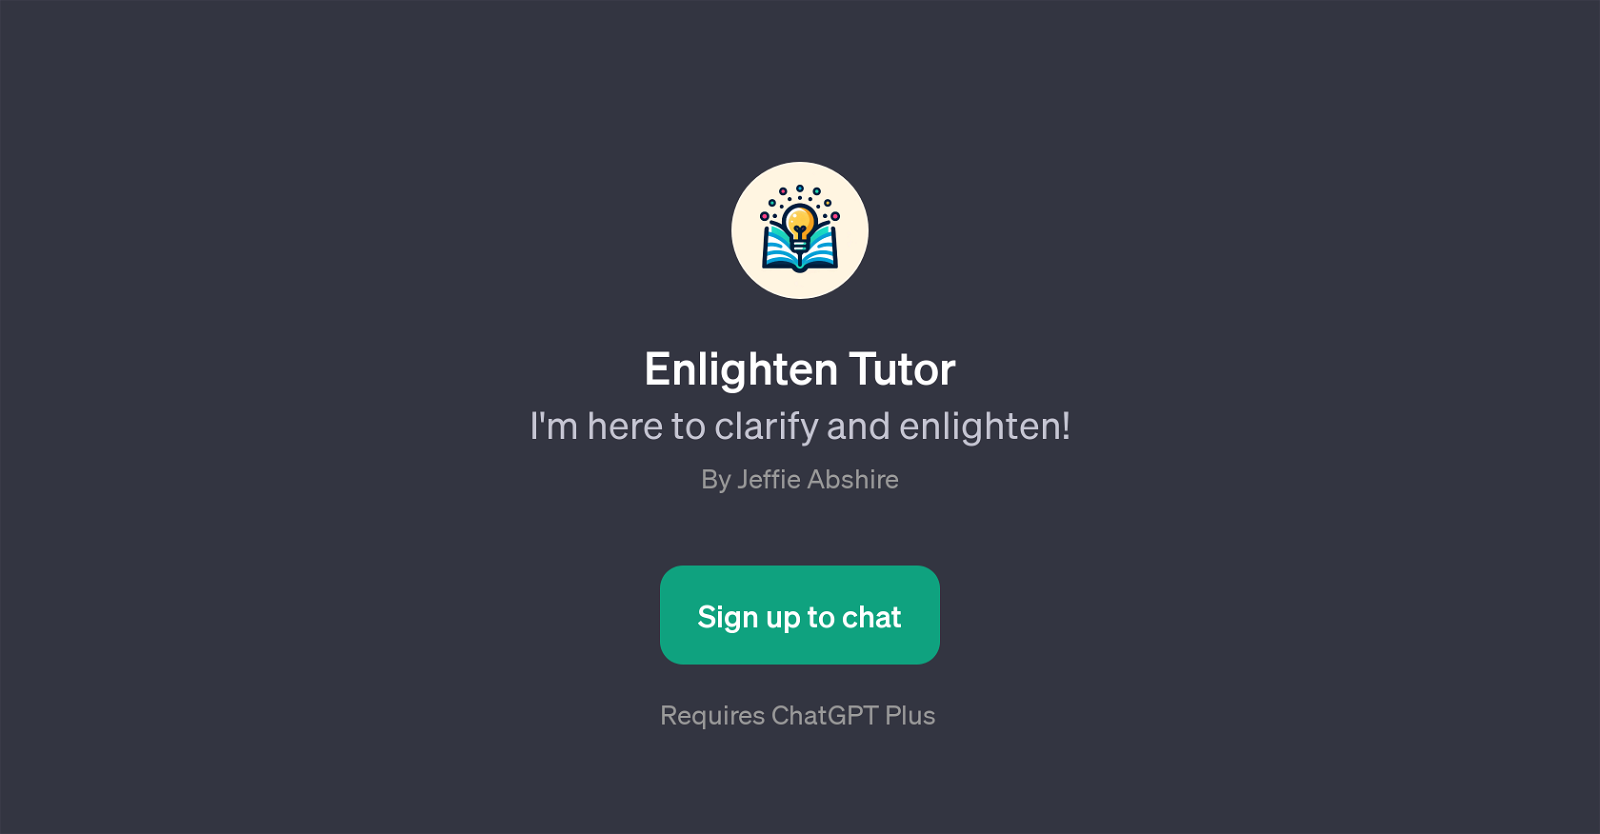 Enlighten Tutor website